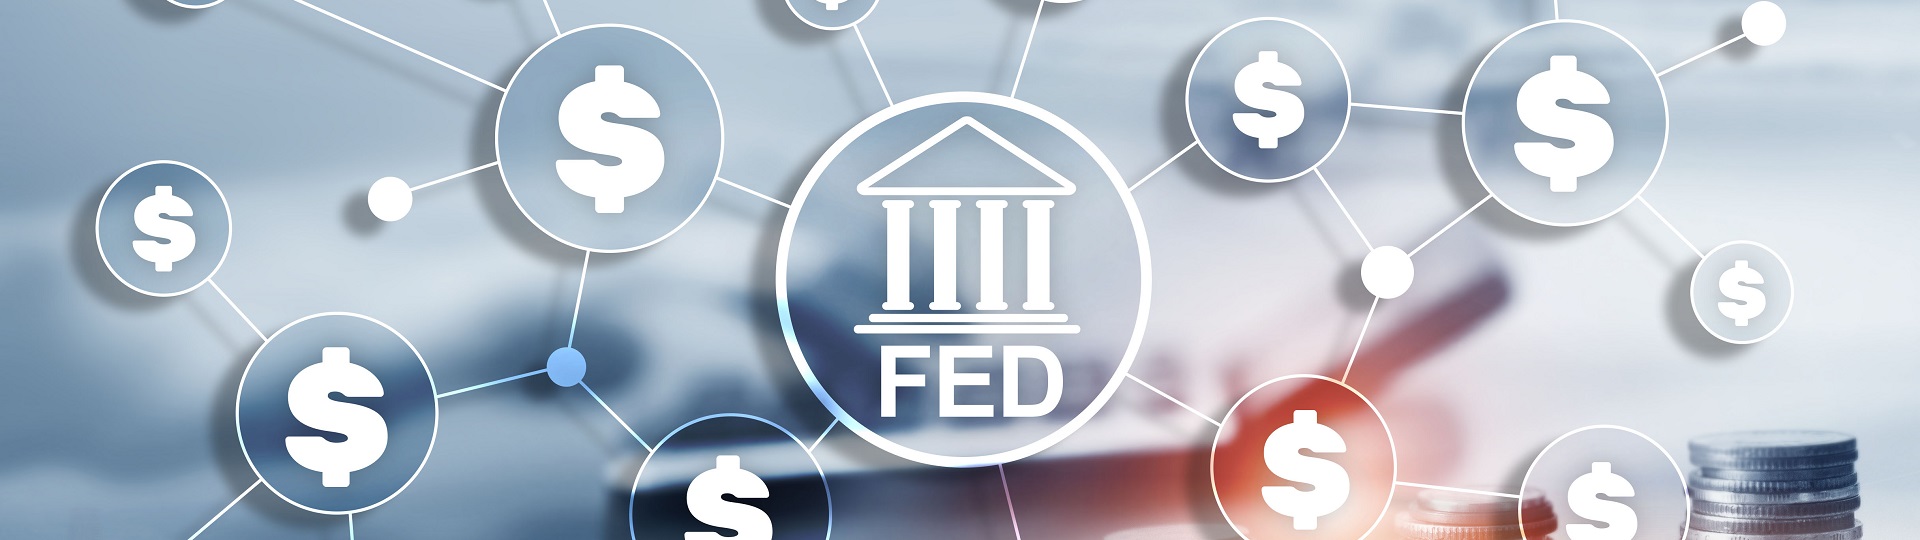 Zápis ze zasedání Fedu dodal akciím podporu